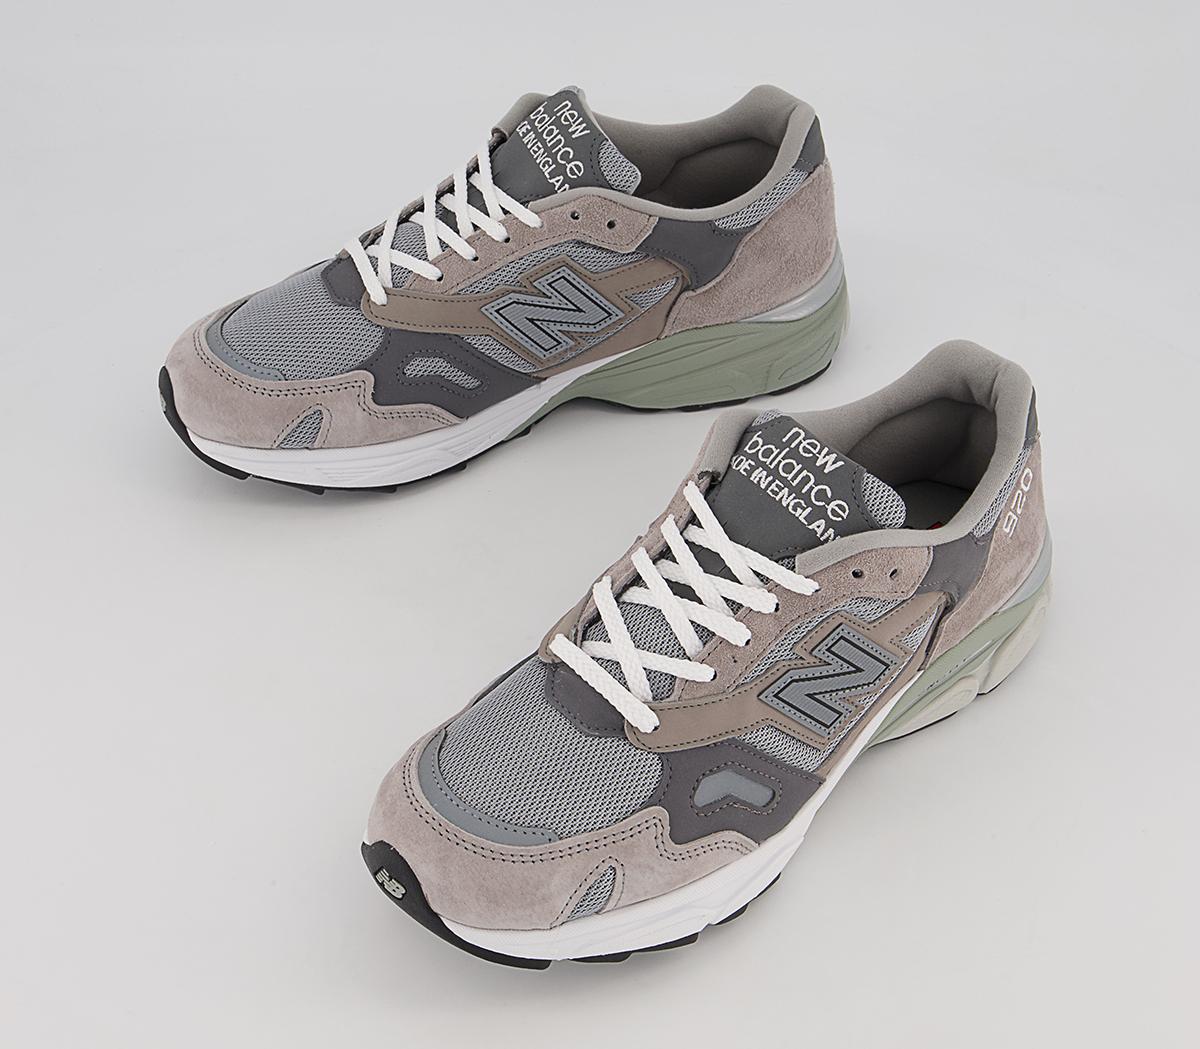 New Balance 920 Trainers Miuk Lunar Rise Grey - Men's Premium Sneakers